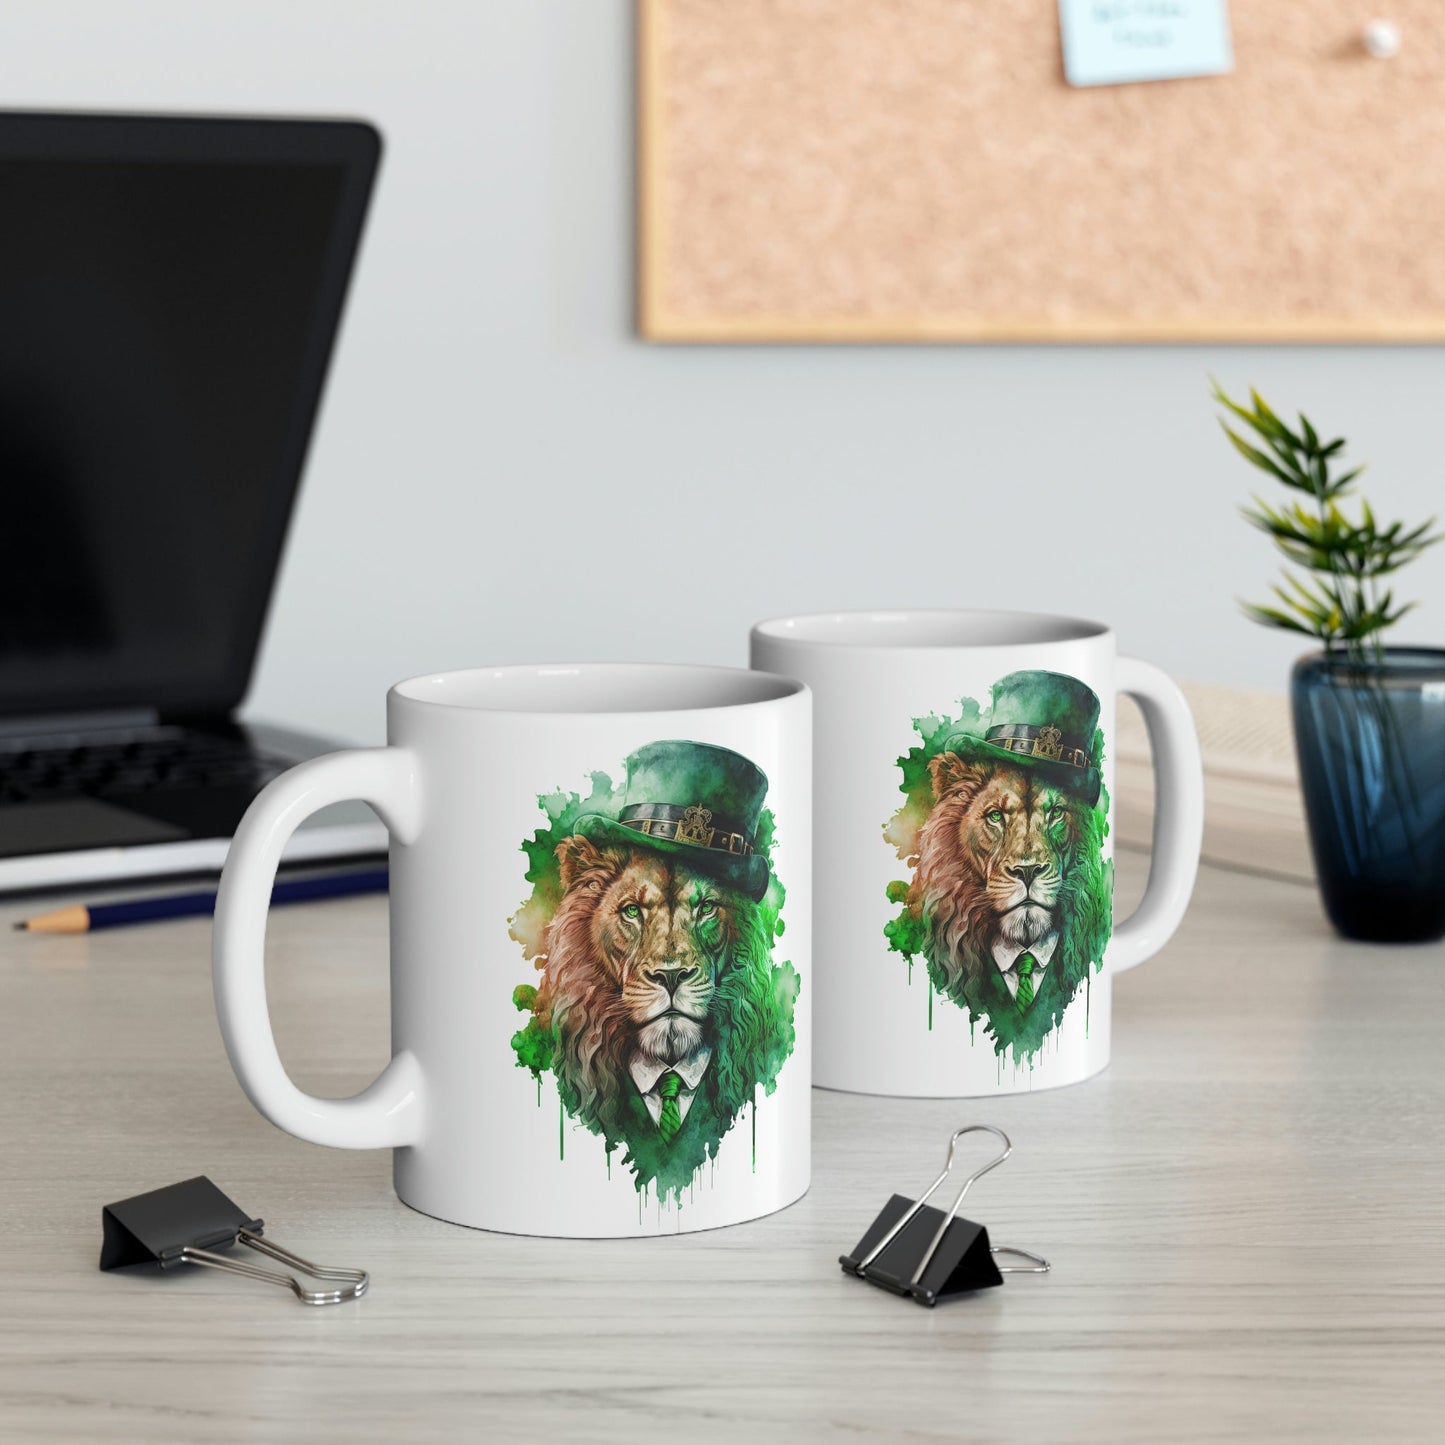 Lion Gangster St. Patrick's Day Mug